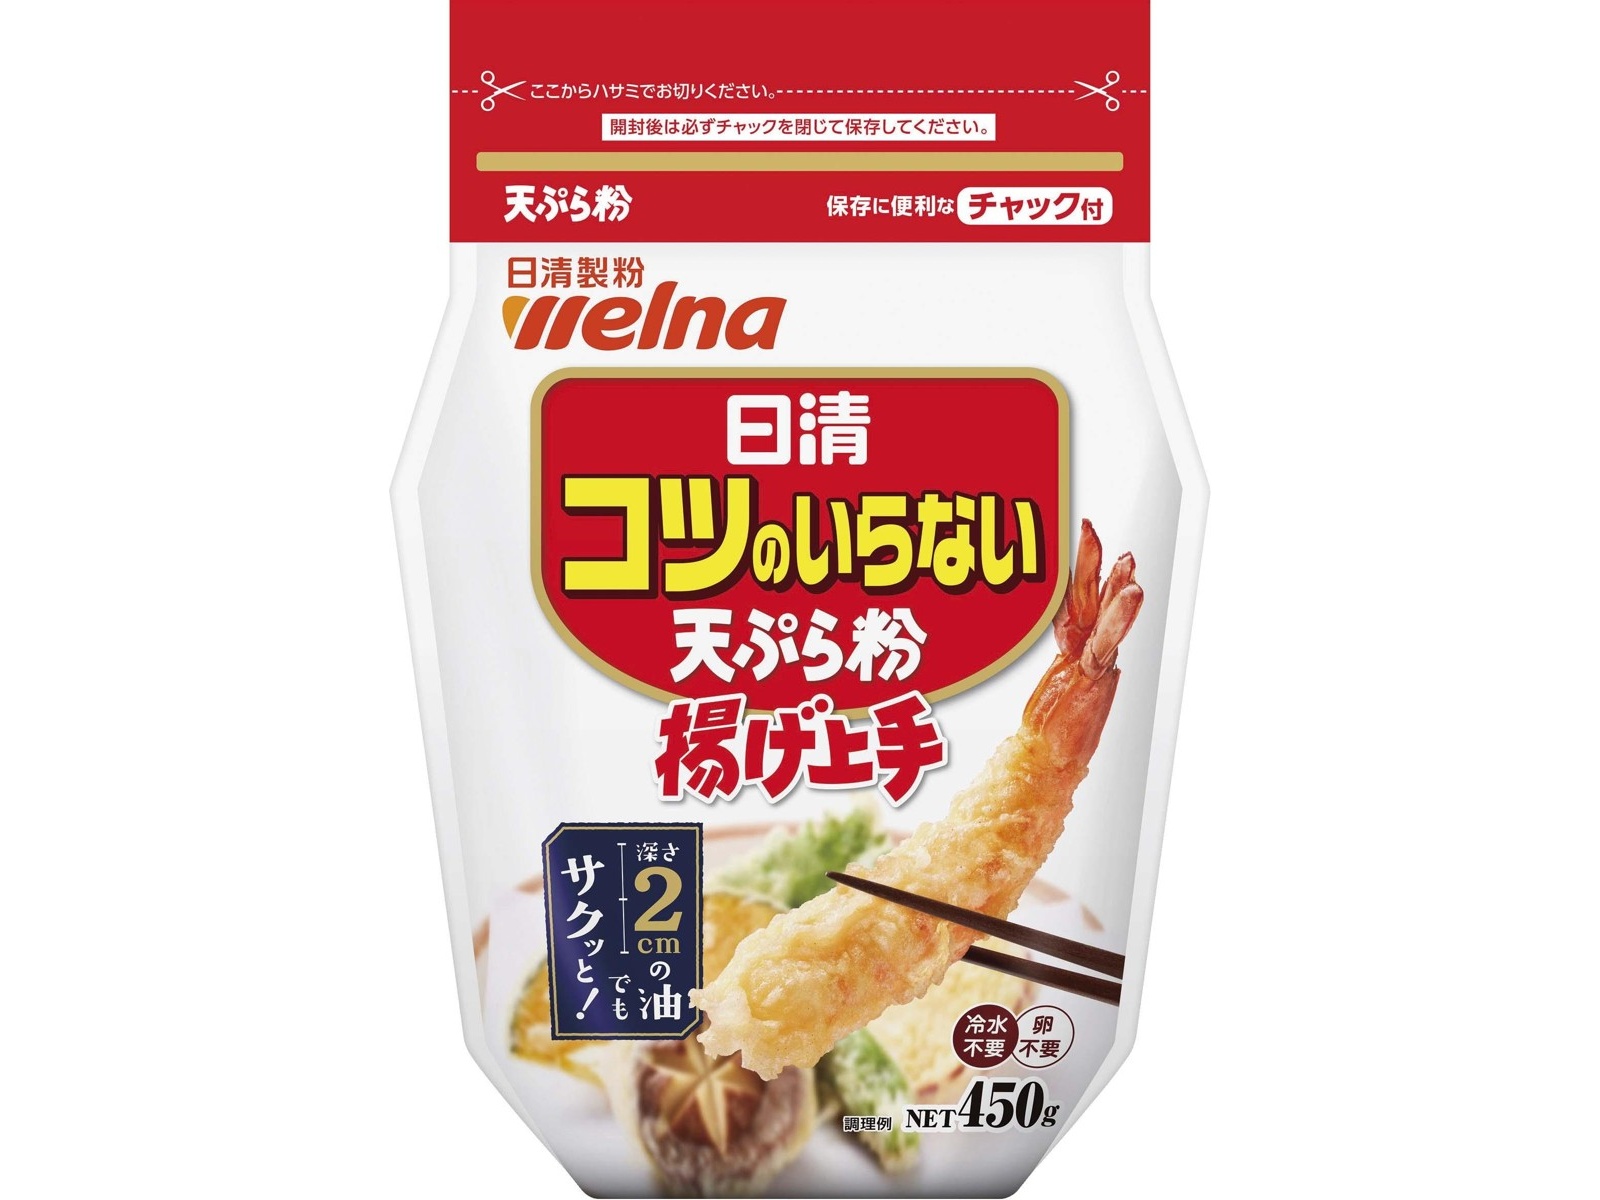 日清製粉ウェルナ コツのいらない天ぷら粉 450g| コープこうべネット